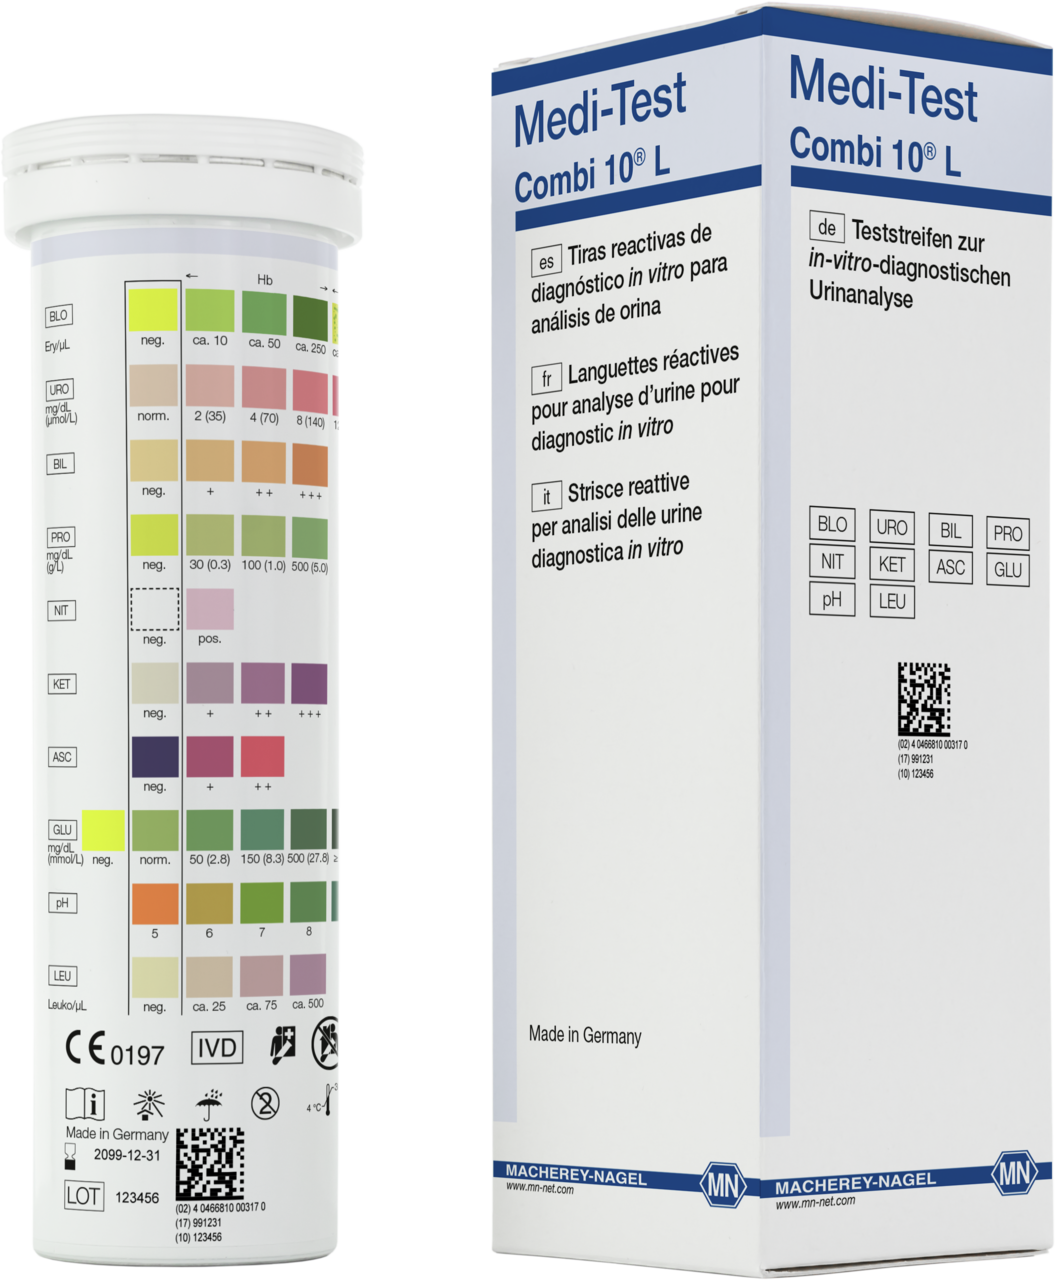 Bandelettes réactives pour analyse d'urine, Medi-Test Combi 10 L